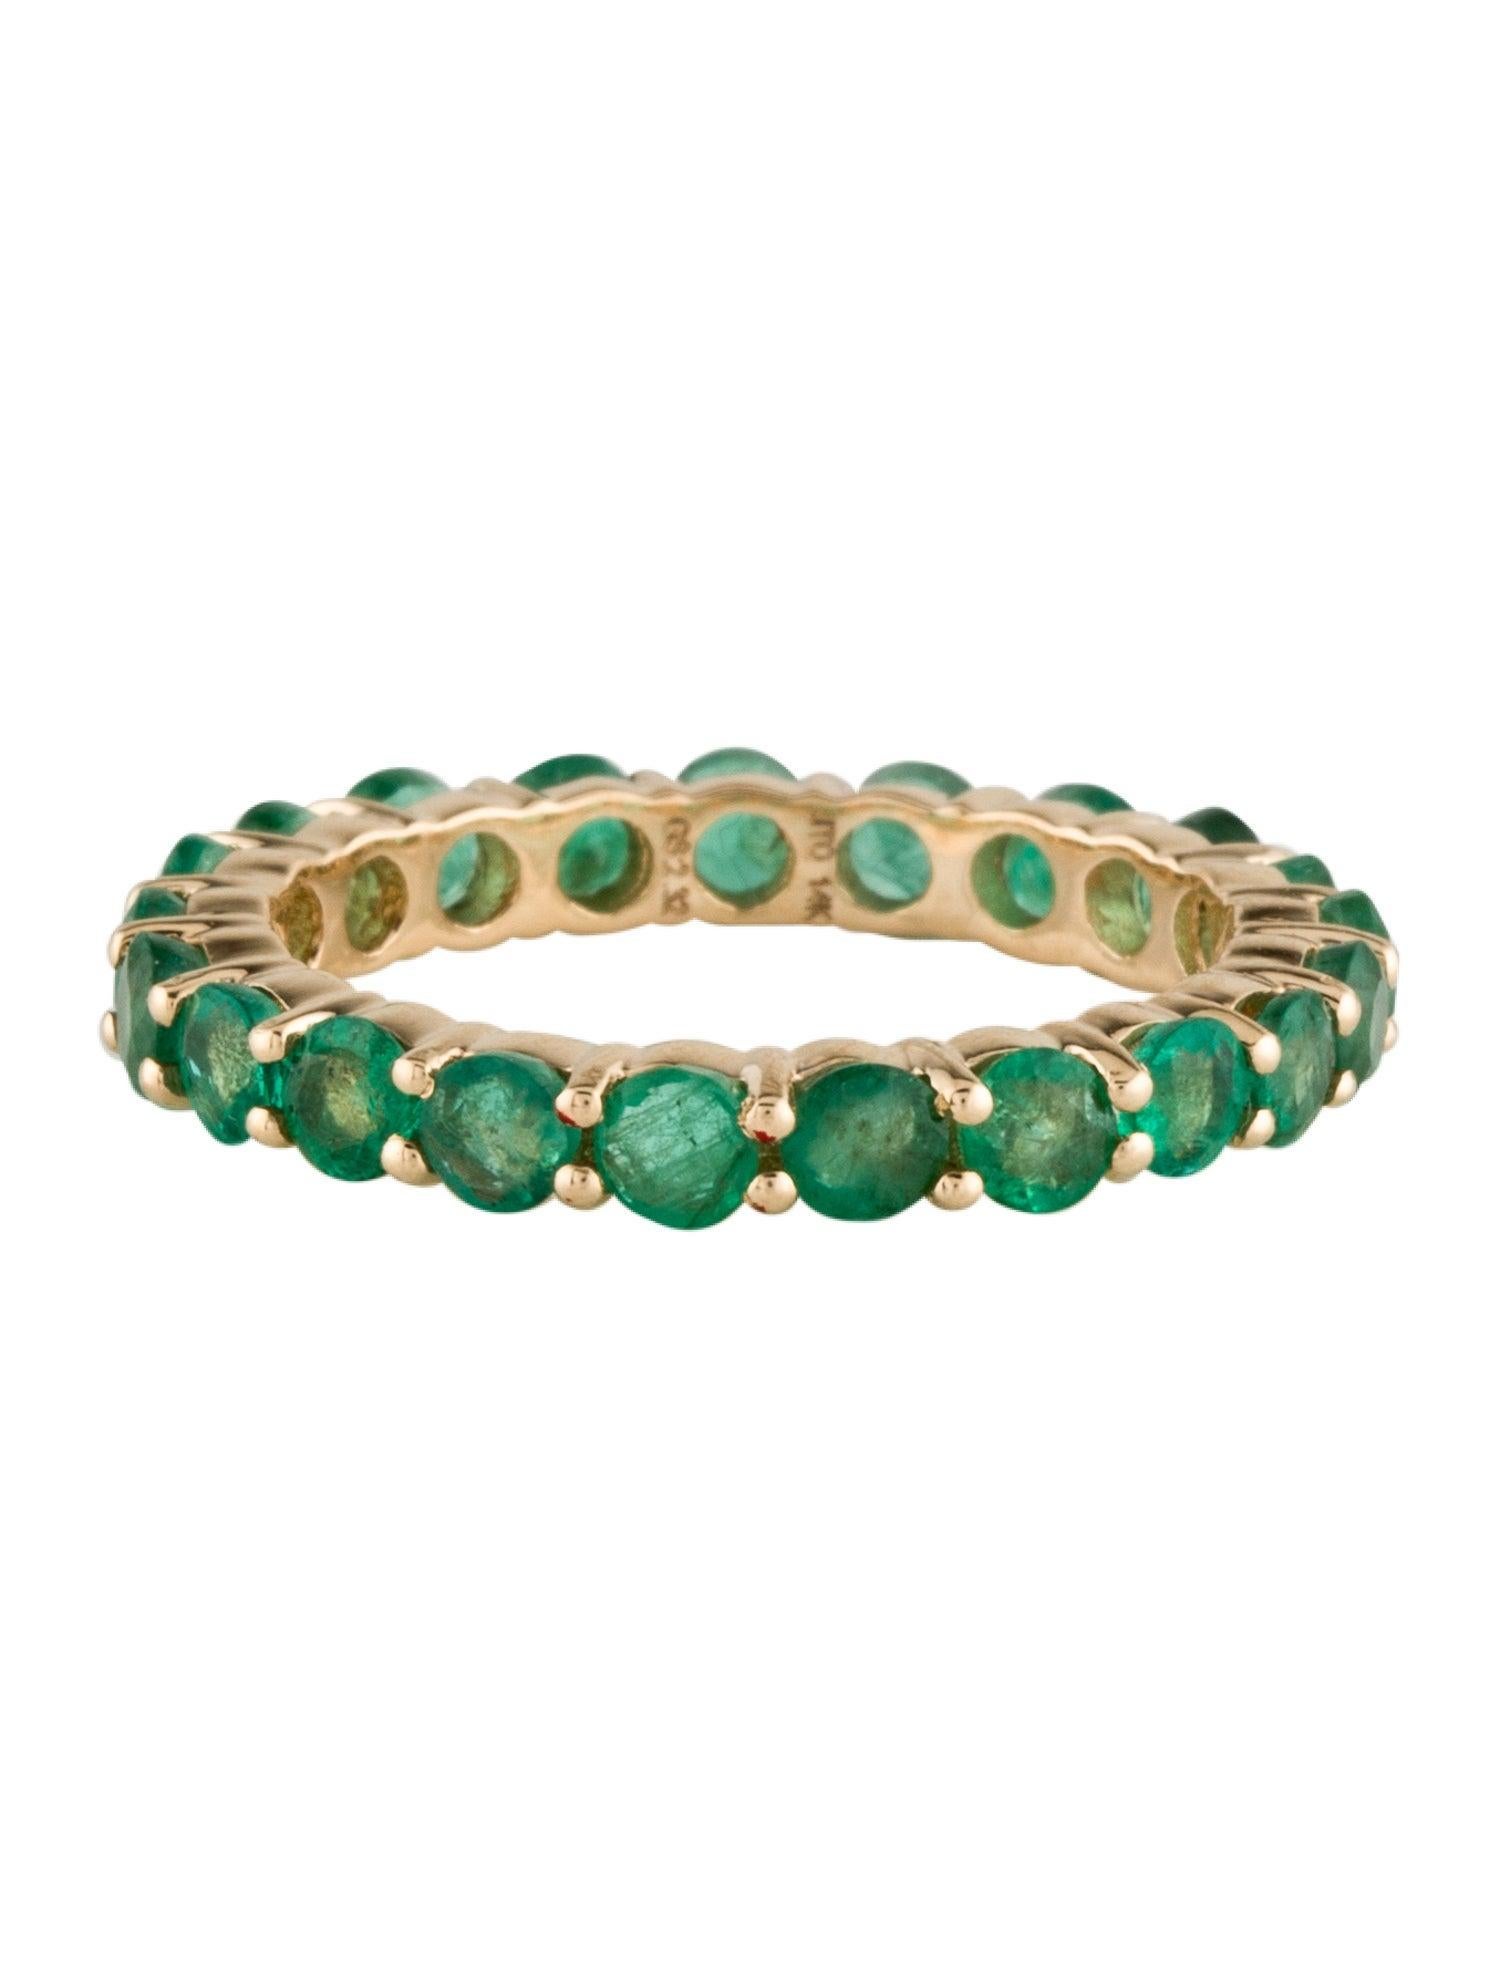 Tauchen Sie ein in die bezaubernde Anziehungskraft unseres Forest Ferns Emerald Ring, ein Meisterwerk aus der außergewöhnlichen Kollektion von Jeweltique. Dieser exquisite Ring entführt Sie in das Herz der Natur, wo das üppige Grün der Wälder der